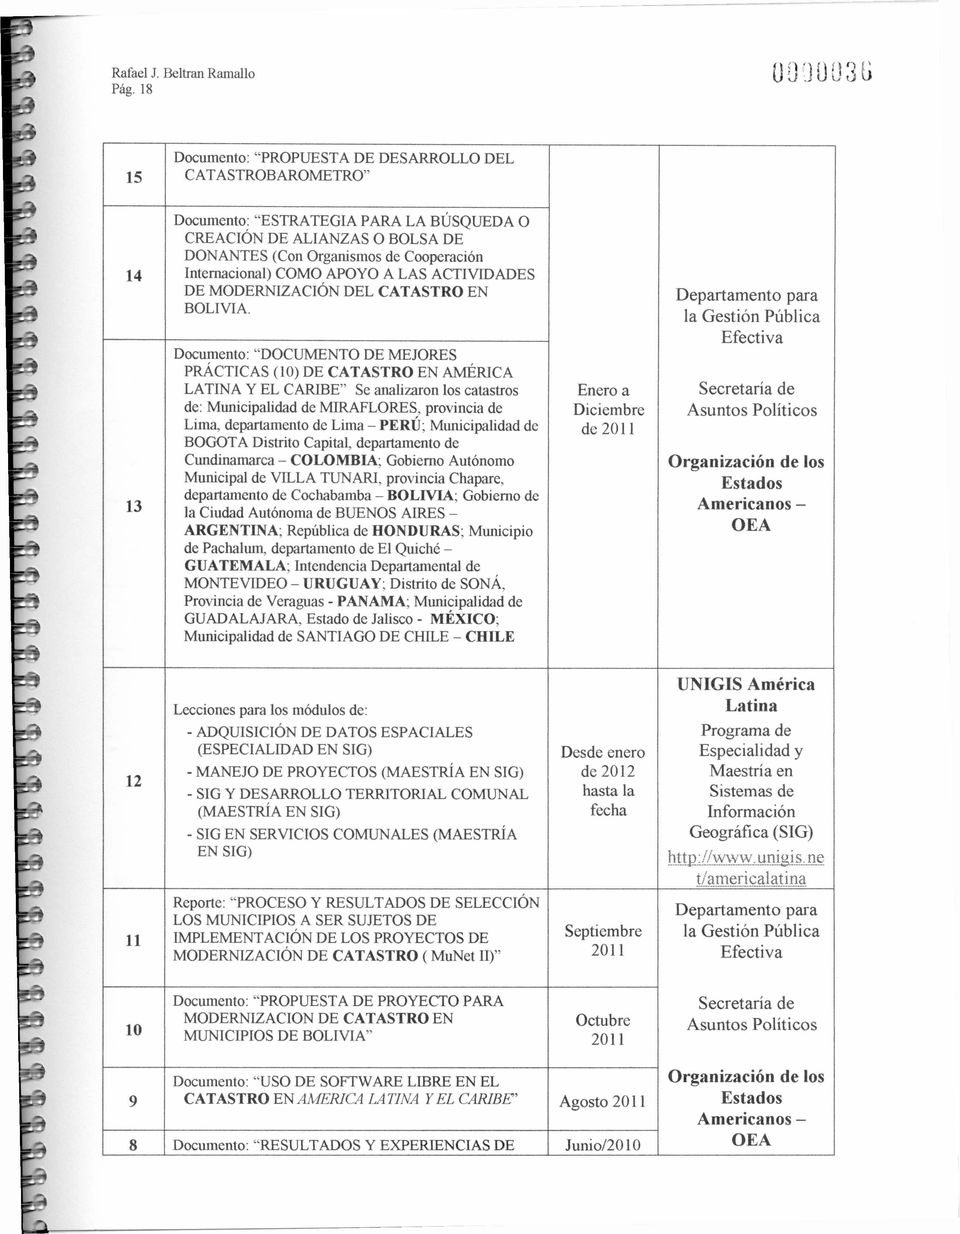 Documento: DOCUMENTO DE MEJORES PRÁCTICAS (0) DE CATASTRO EN AMÉRICA LATINA Y EL CARIBE Se analizaron los catastros de: Municipalidad de MIRAFLORES, provincia de Lima, departamento de Lima - PERÚ;